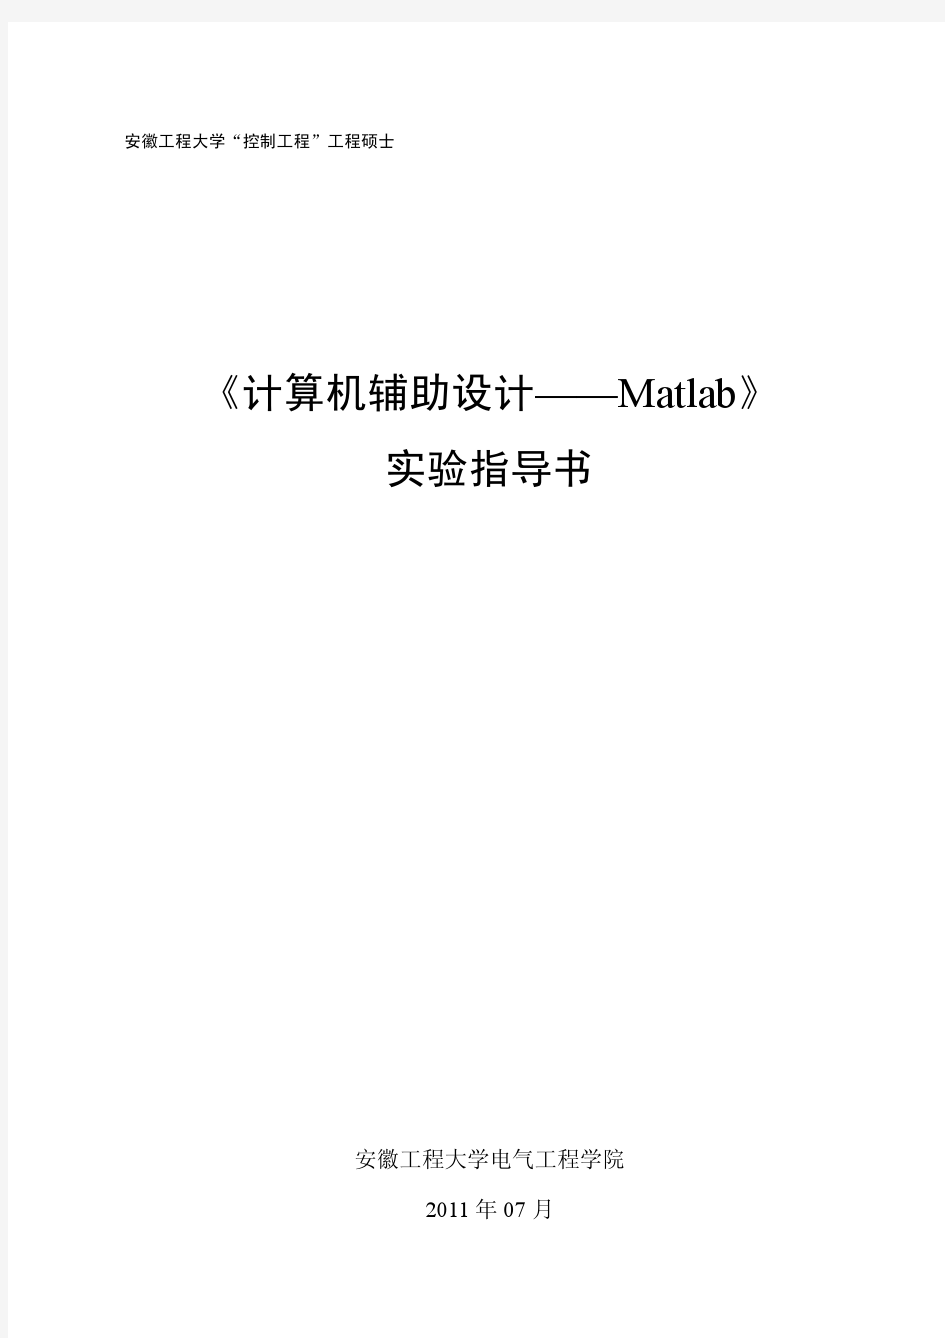 《计算机辅助设计——Matlab》实验指导书(含参考程序)